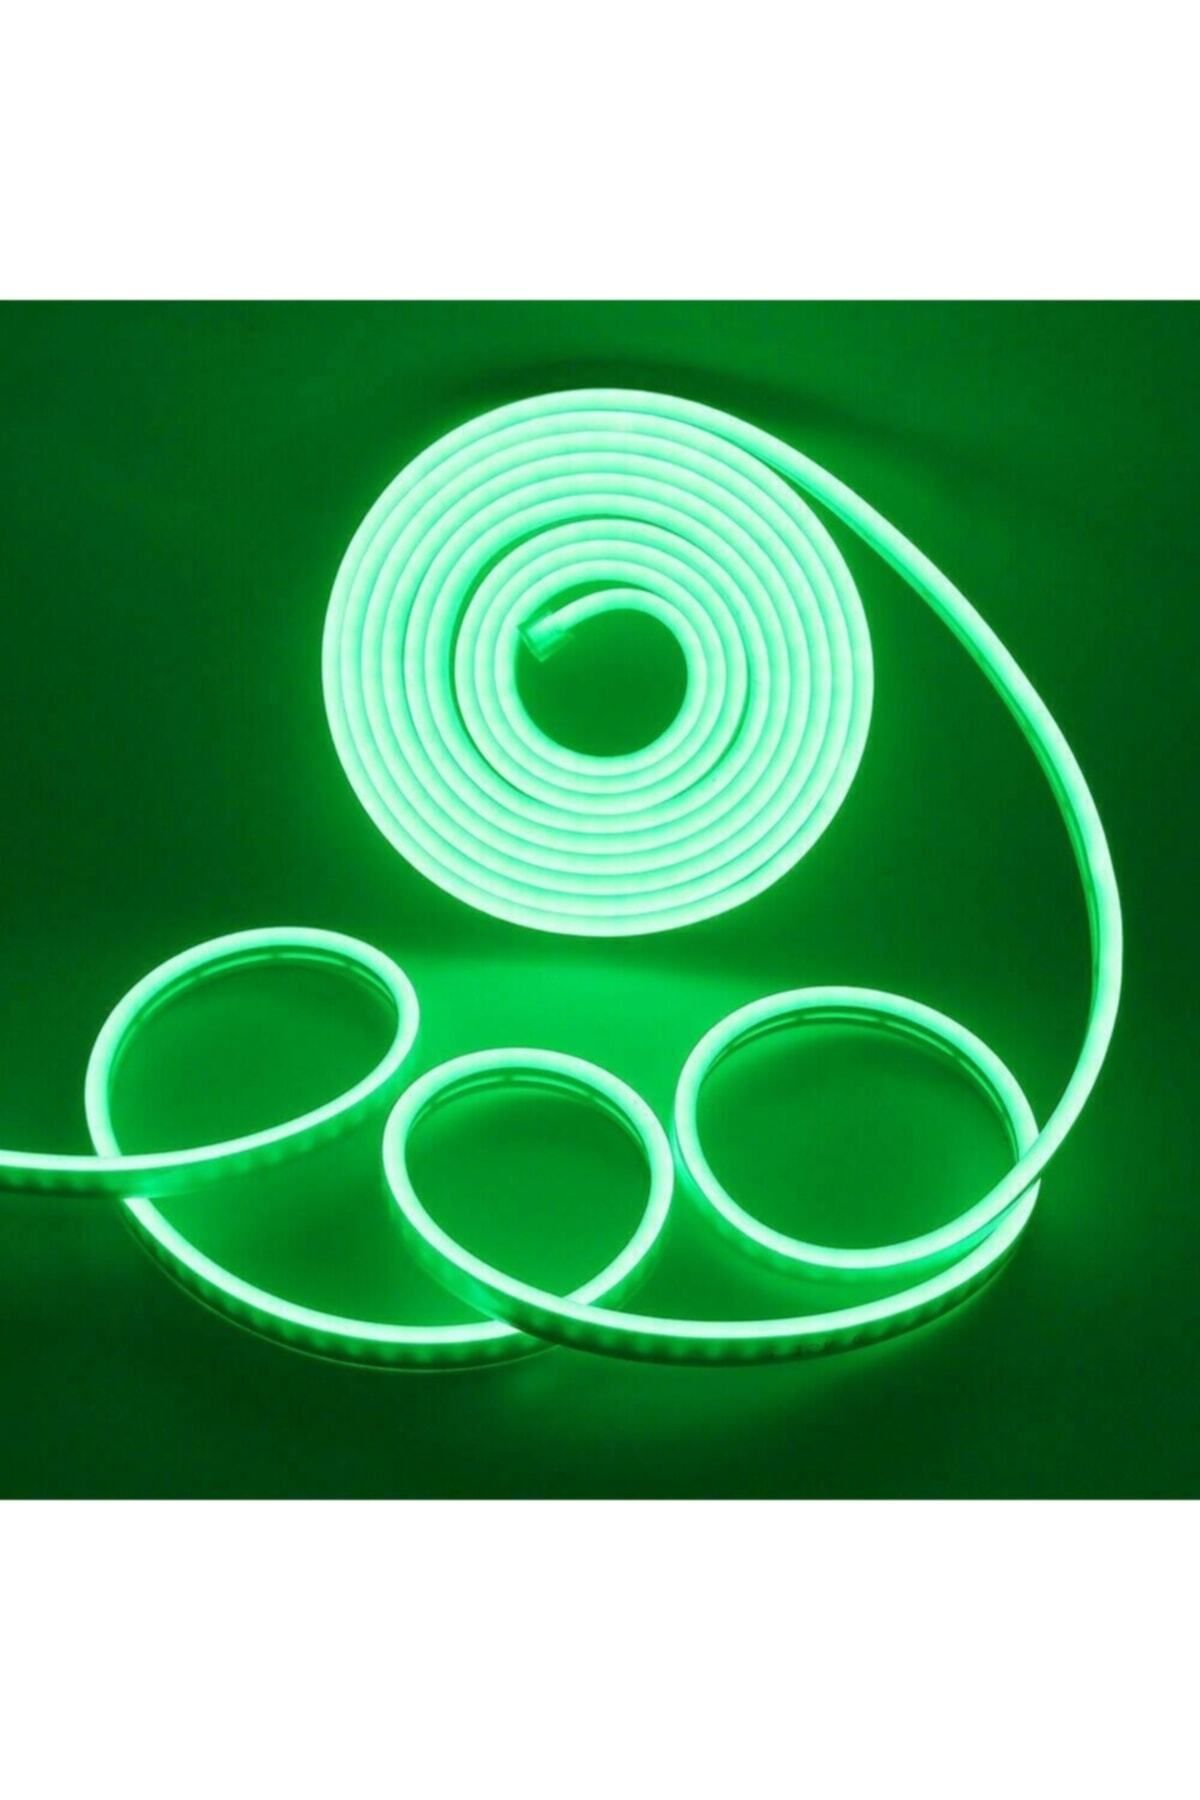 Ema Dükkan 12 Volt 3 Metre Yeşil Neon Led Işık Prize Takılmaya Hazır Değil Neon Şerit Led Esnek Silikonlu